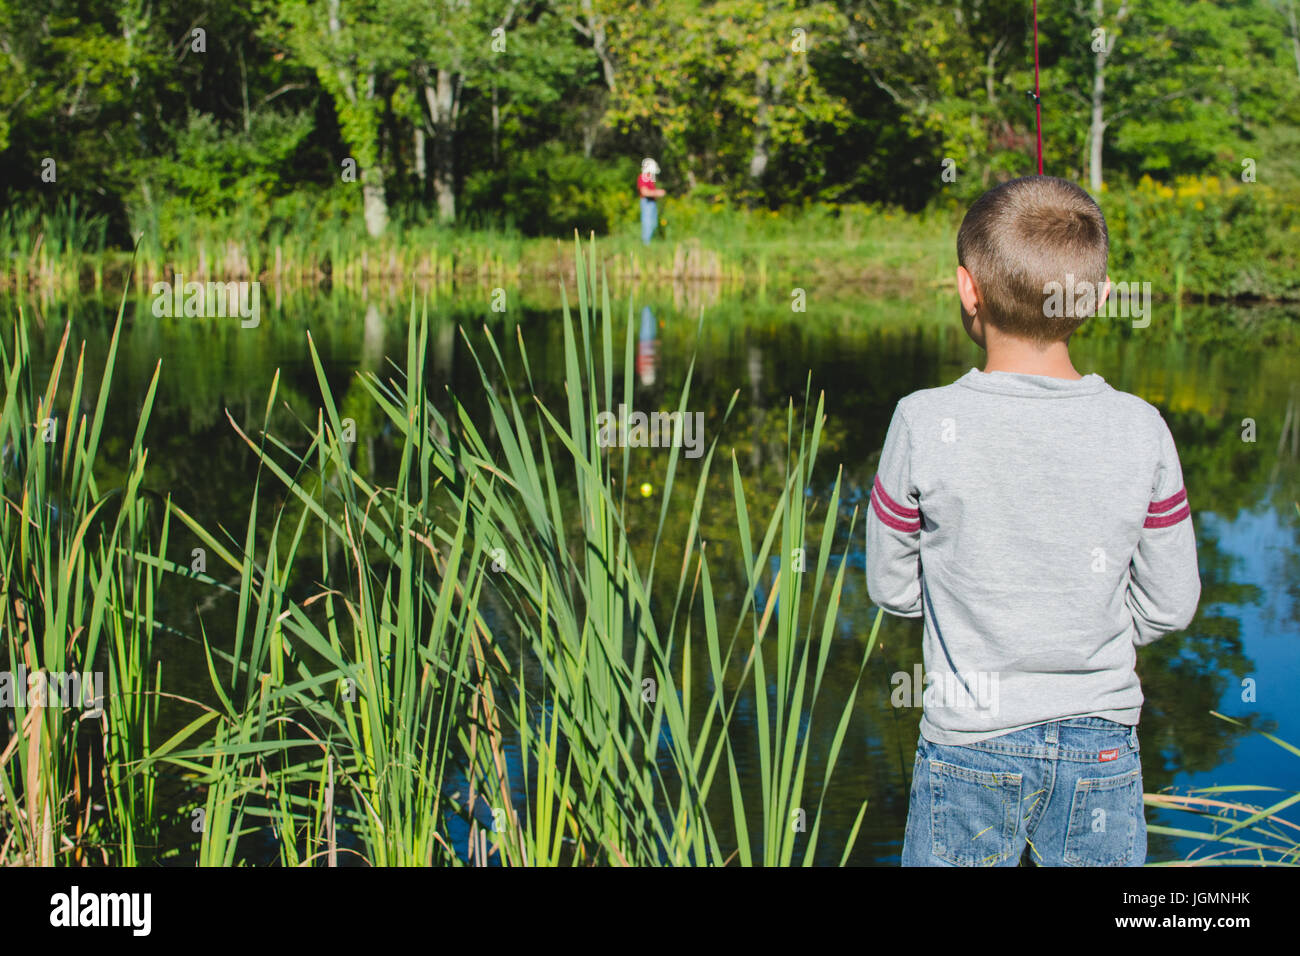 Ein Kind, Angeln an einem Dock an einem Teich in einer ländlichen Gegend. Stockfoto